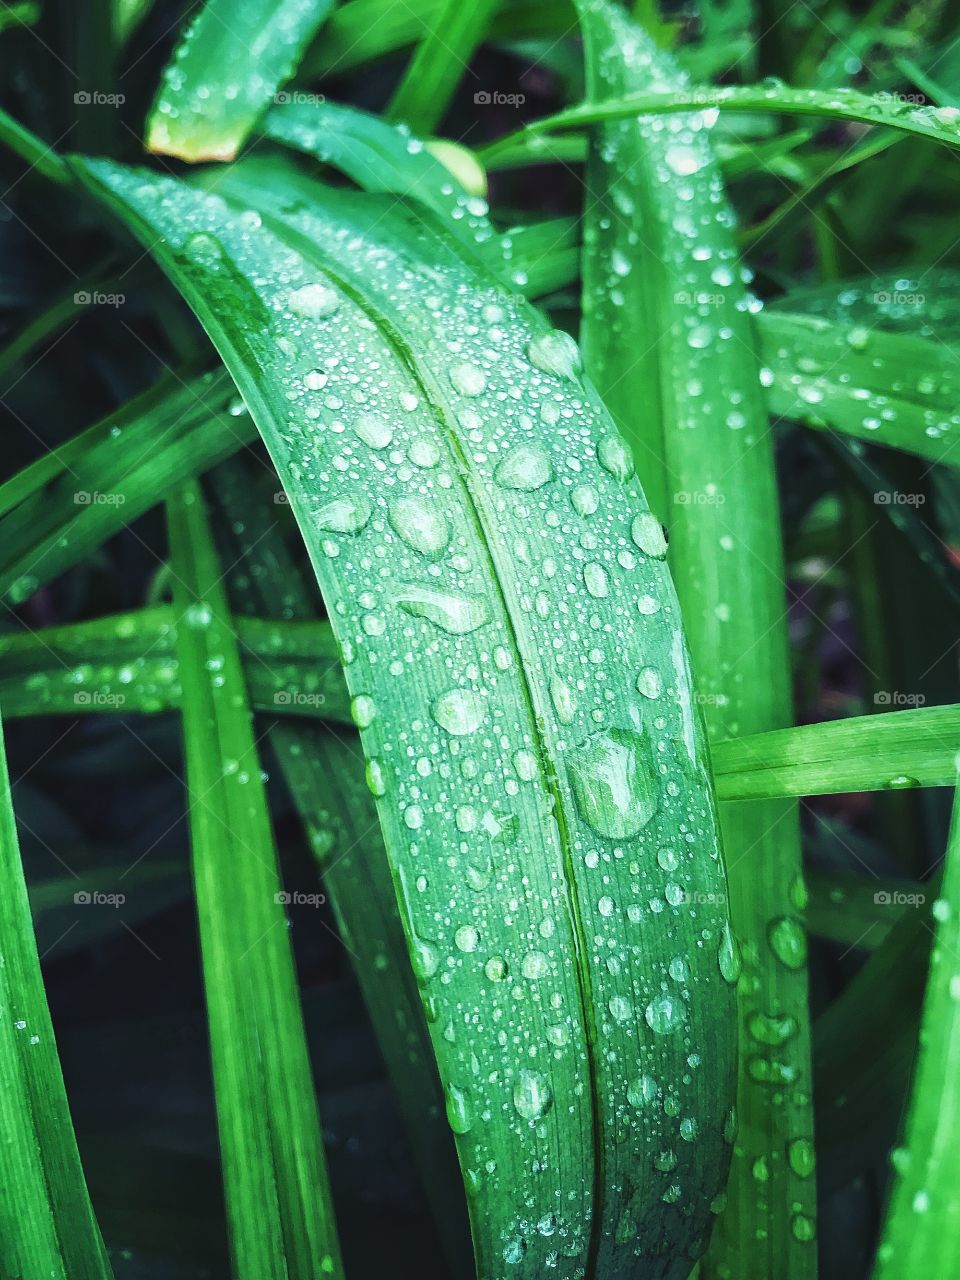 Beads of rain on leaves...